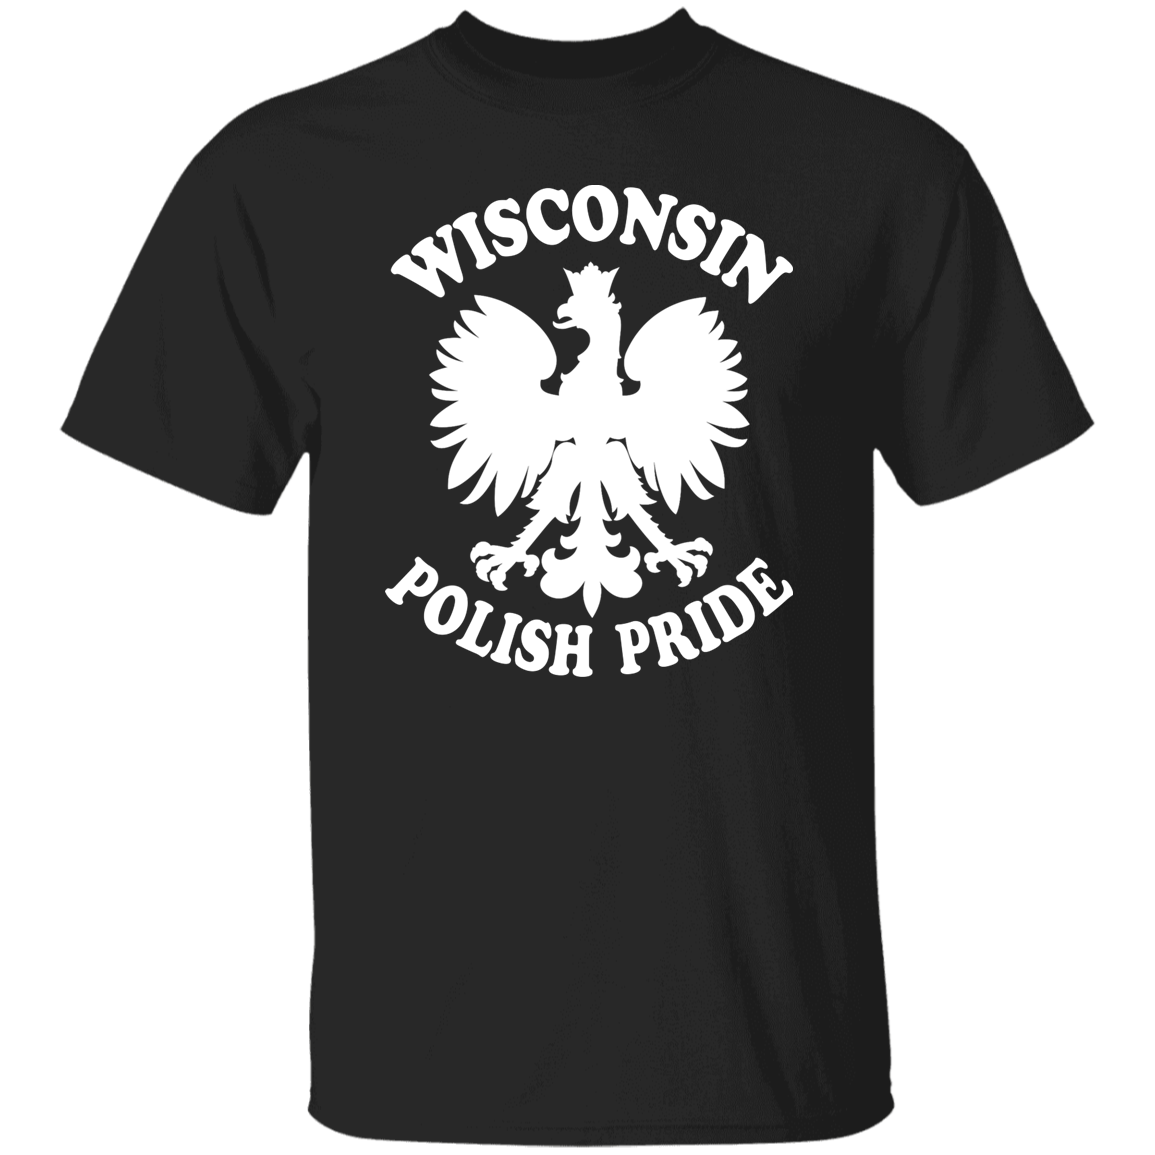 Wisconsin Polish Pride Apparel CustomCat G500 5.3 oz. T-Shirt Black S